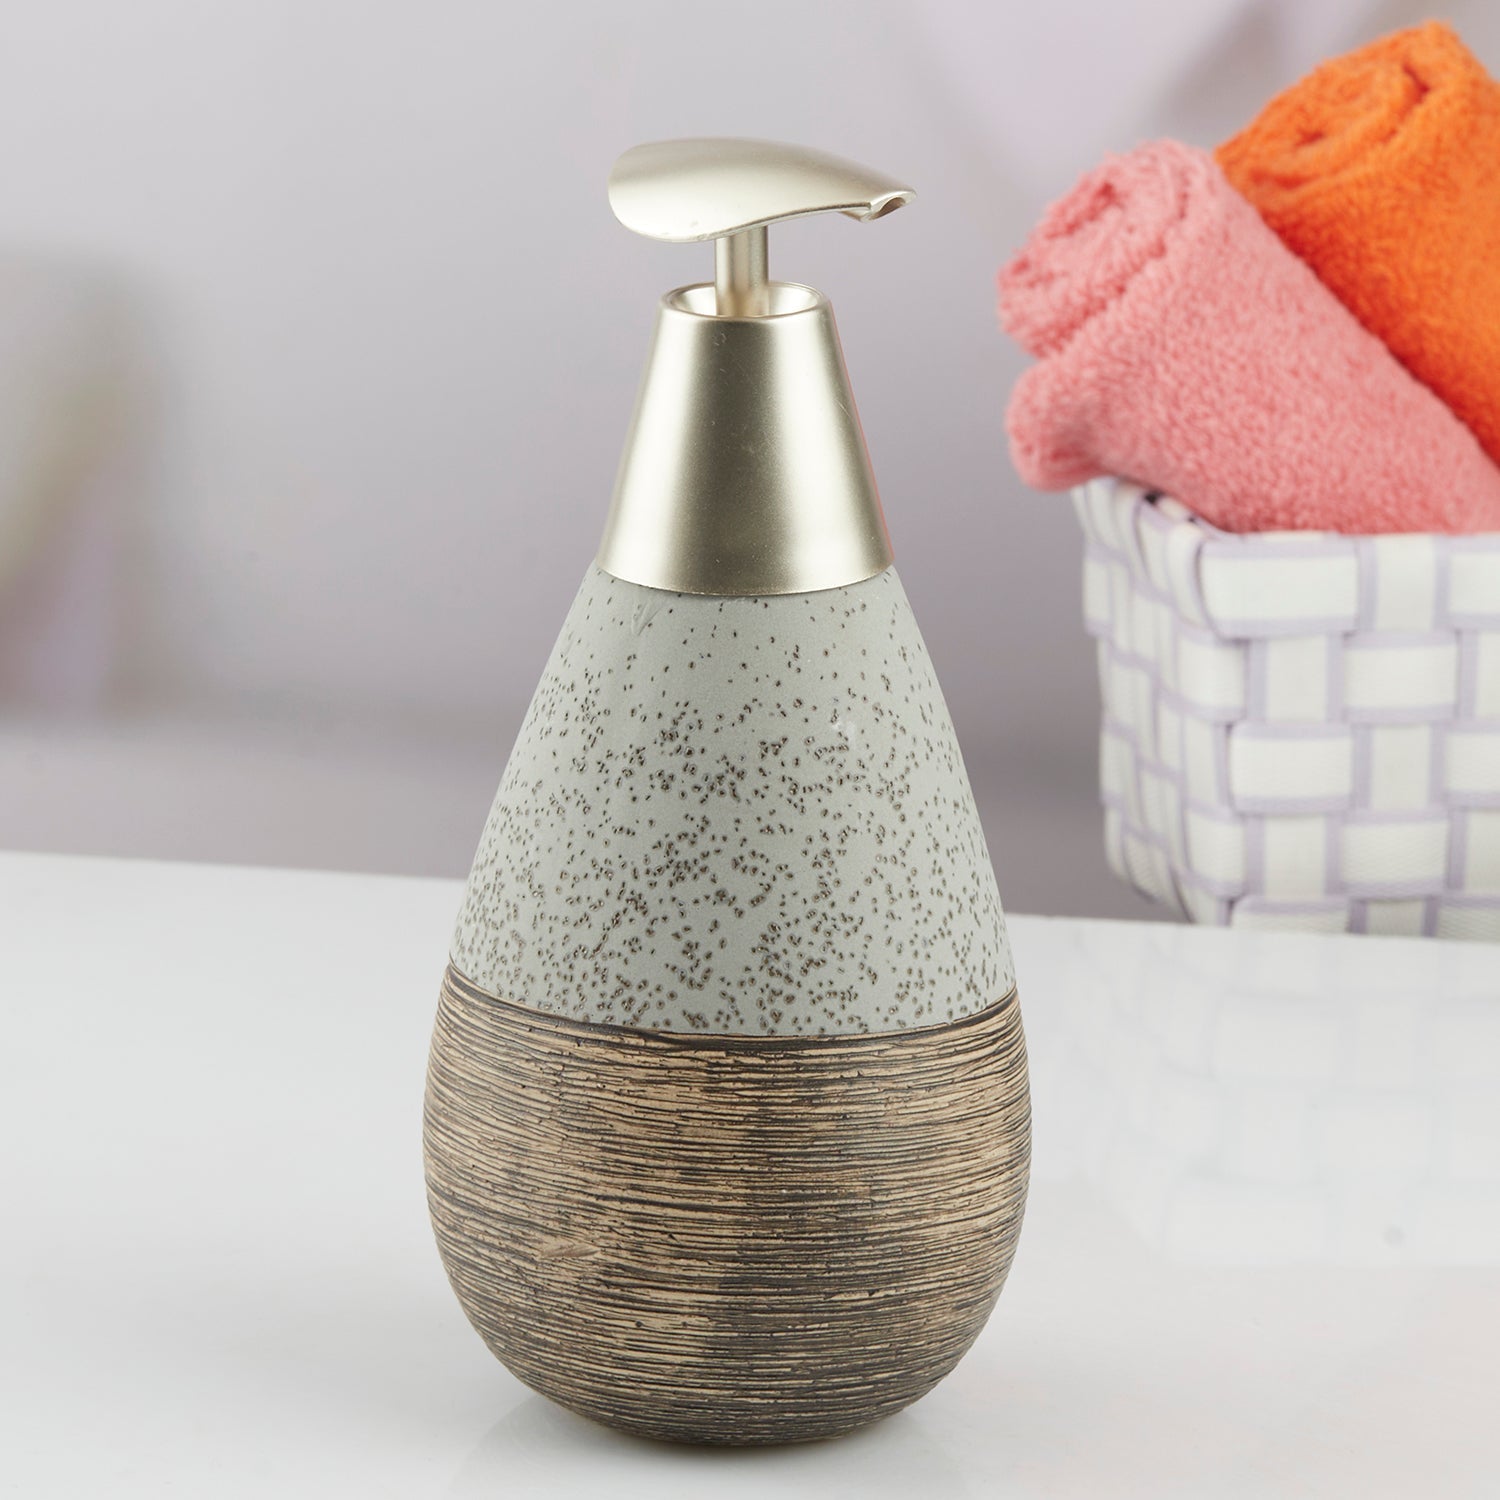 Ceramic Soap Dispenser liquid handwash pump for Bathroom, Set of 1, Beige (10606)